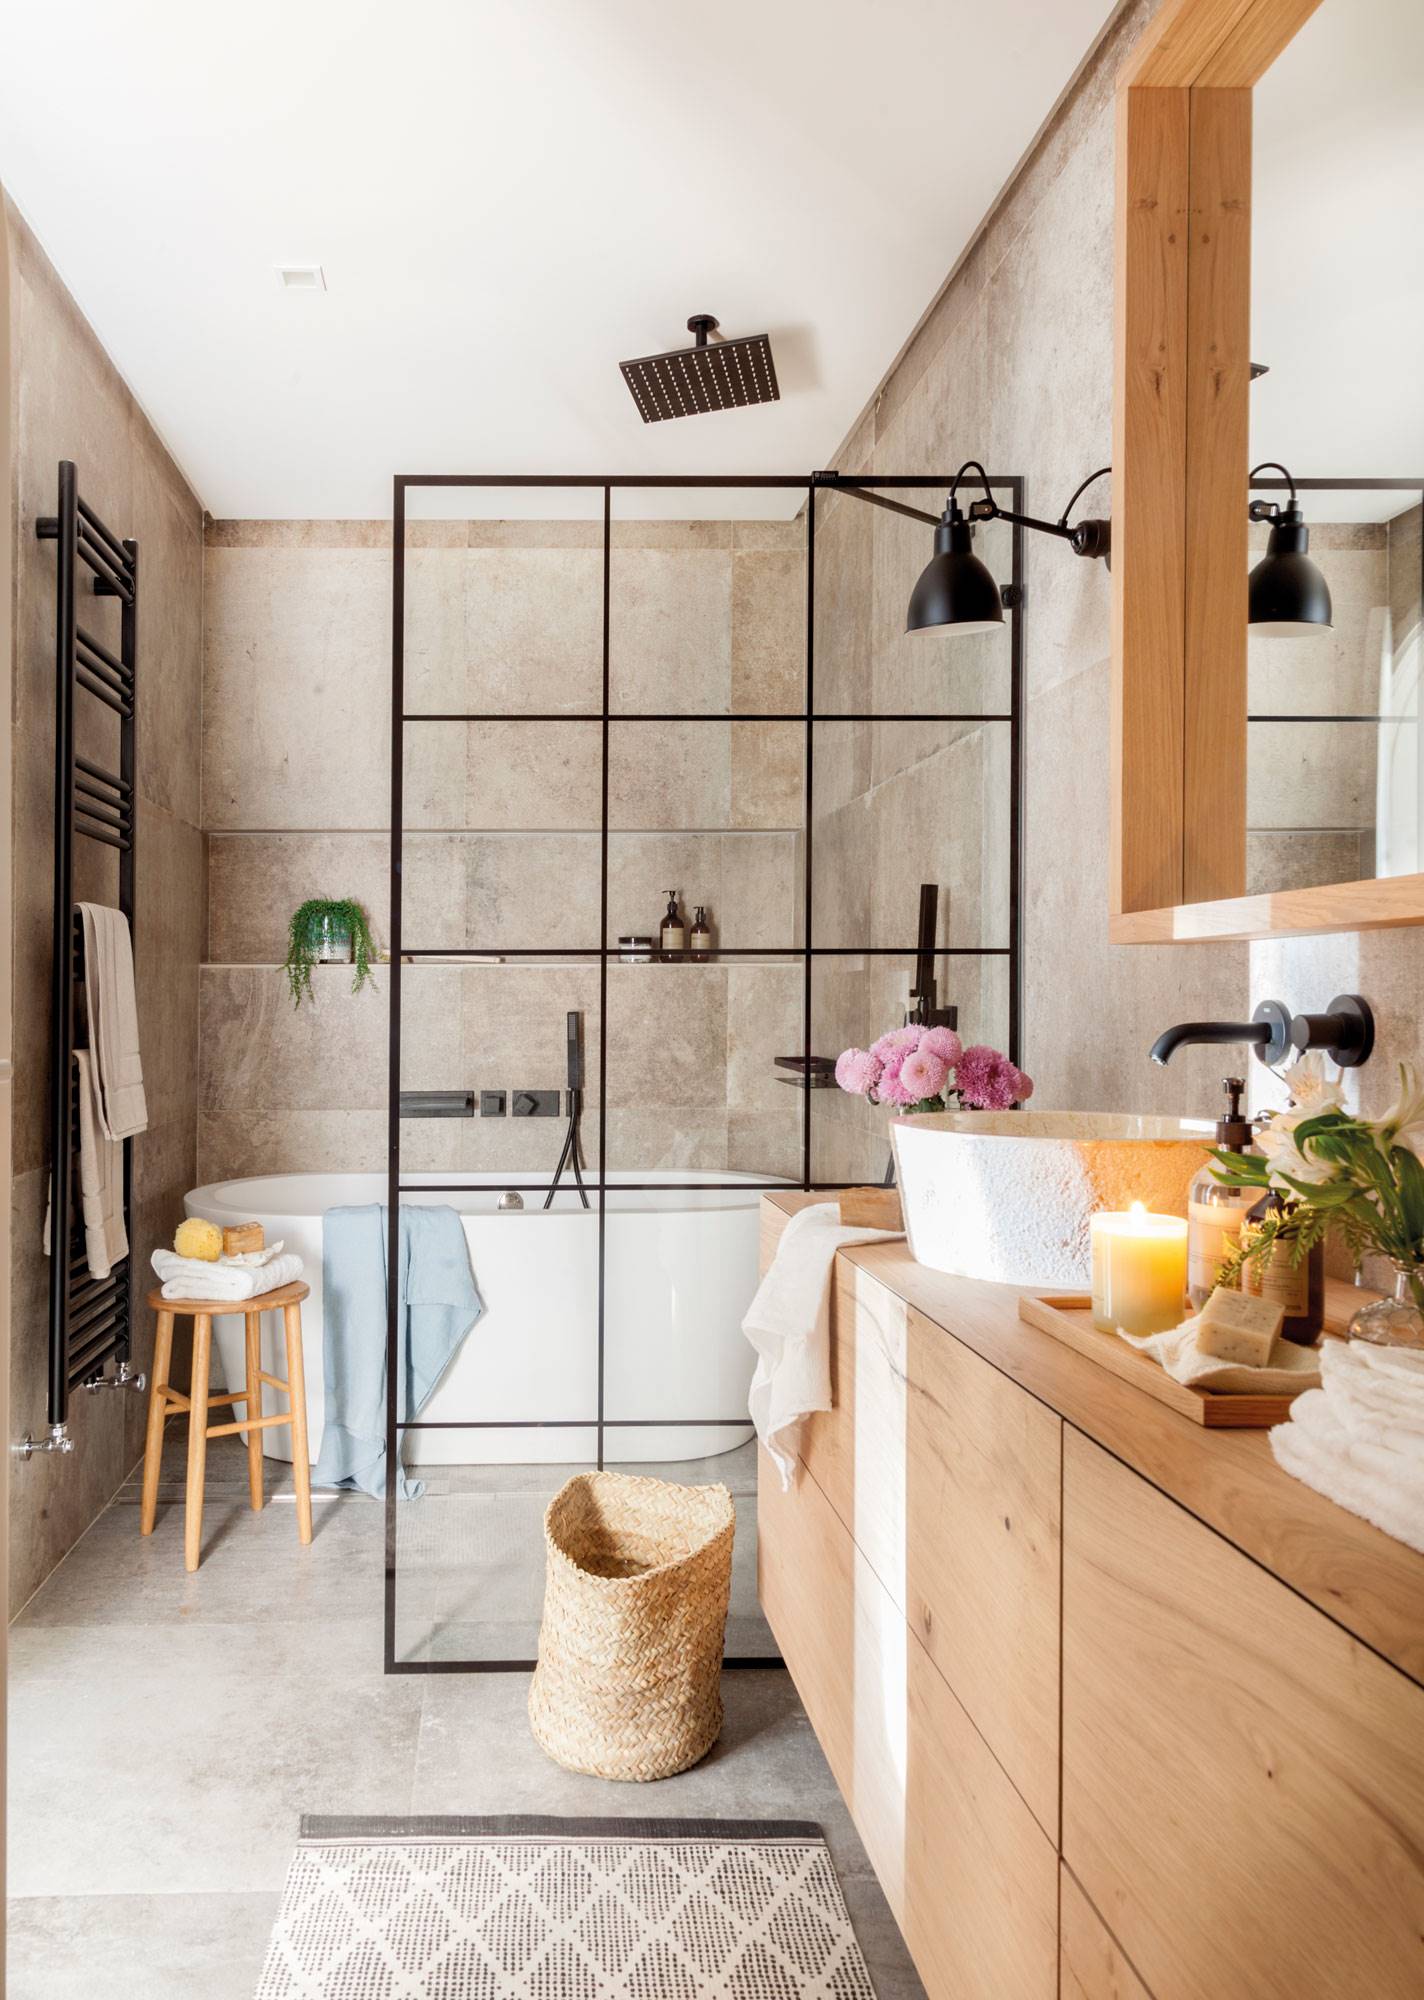 Baño reformado con bañera extenta, pared acristalada de cuarterones como mampara y mueble bajolavabo de madera. 